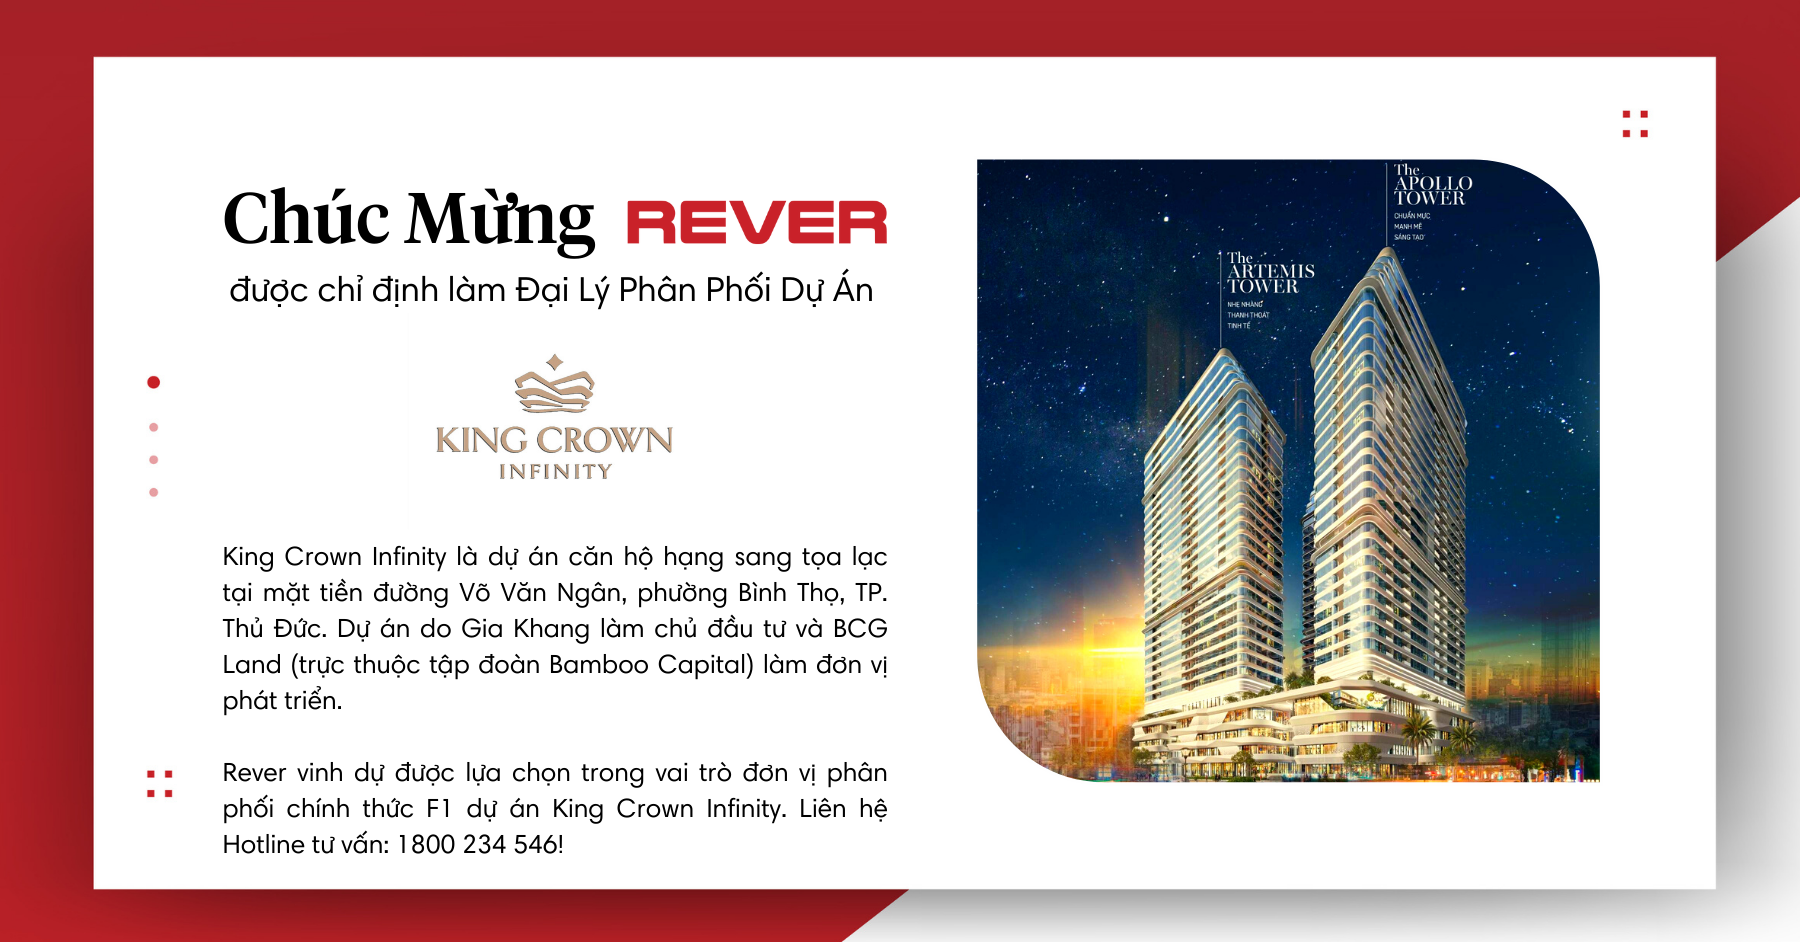 Rever phân phối chính thức F1 dự án King Crown Infinity